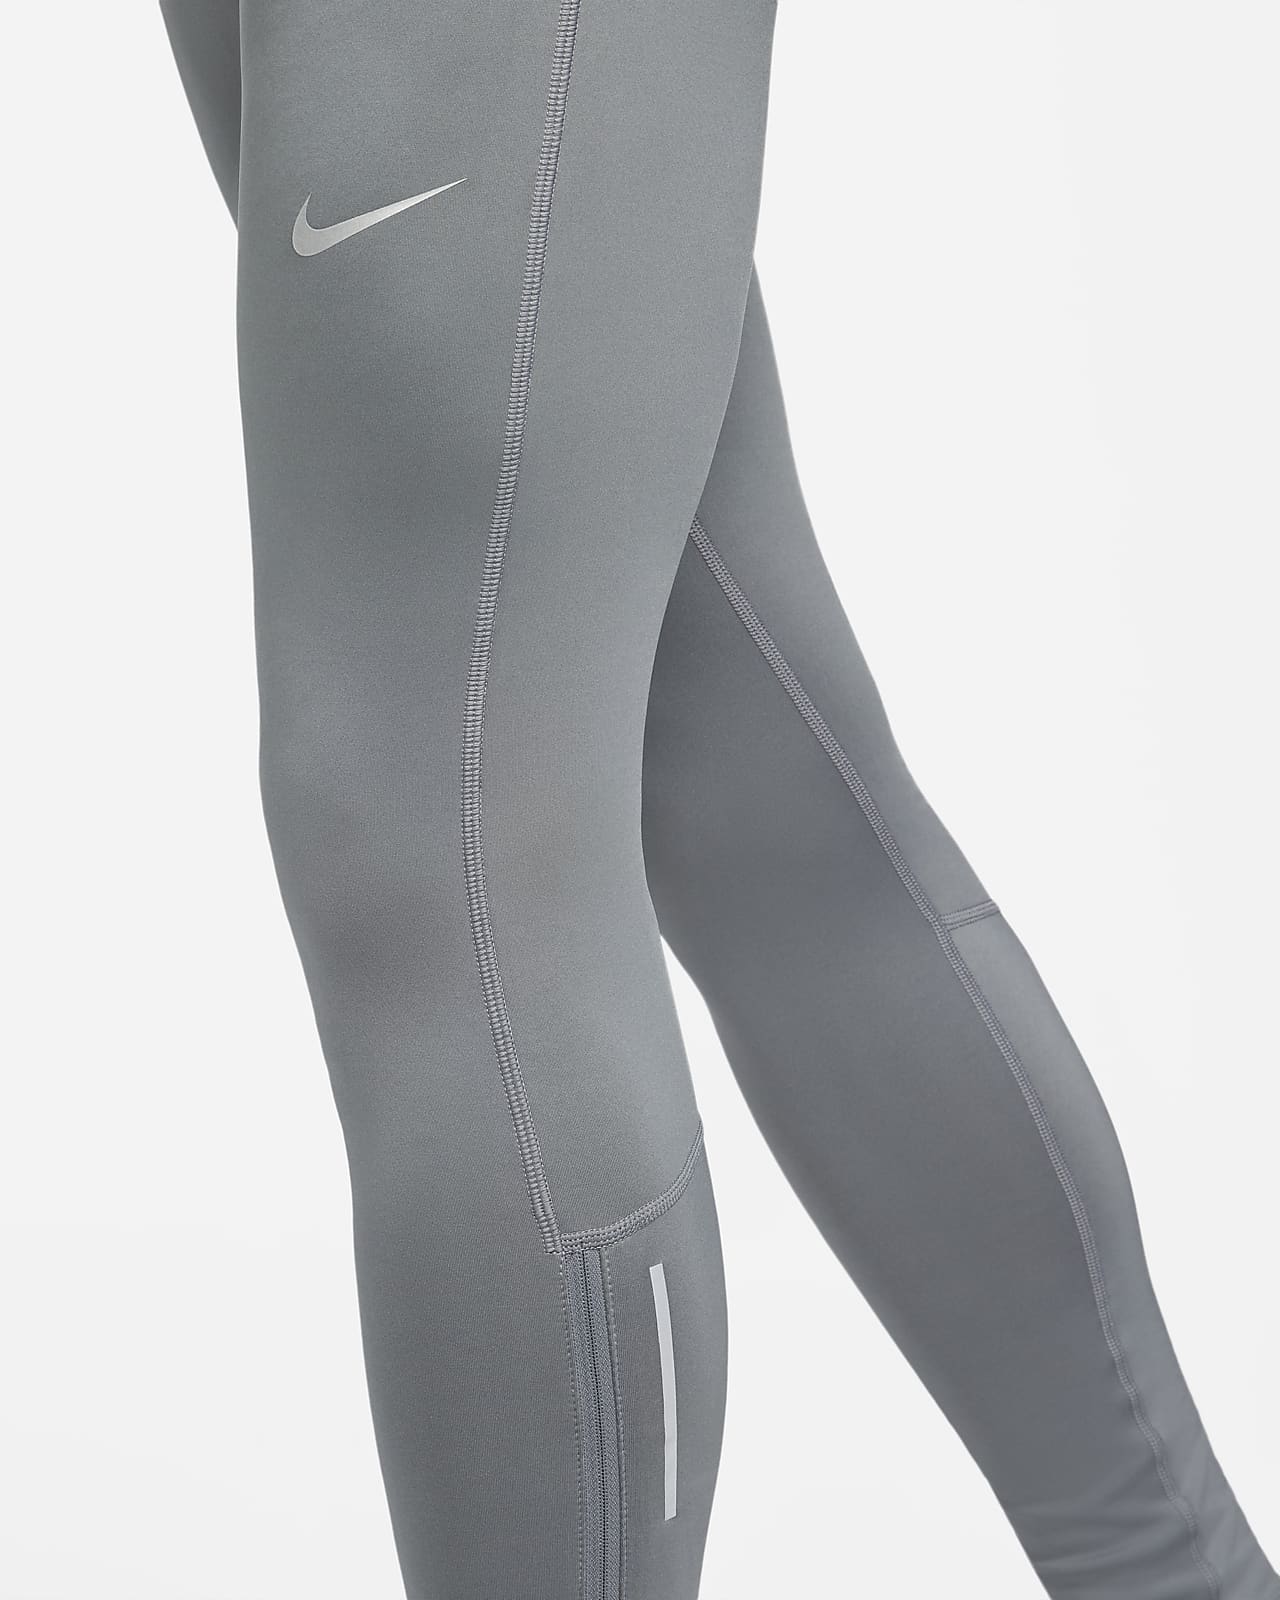 Nike Repel Challenger Running Tights - Running Tights Men's, Buy online